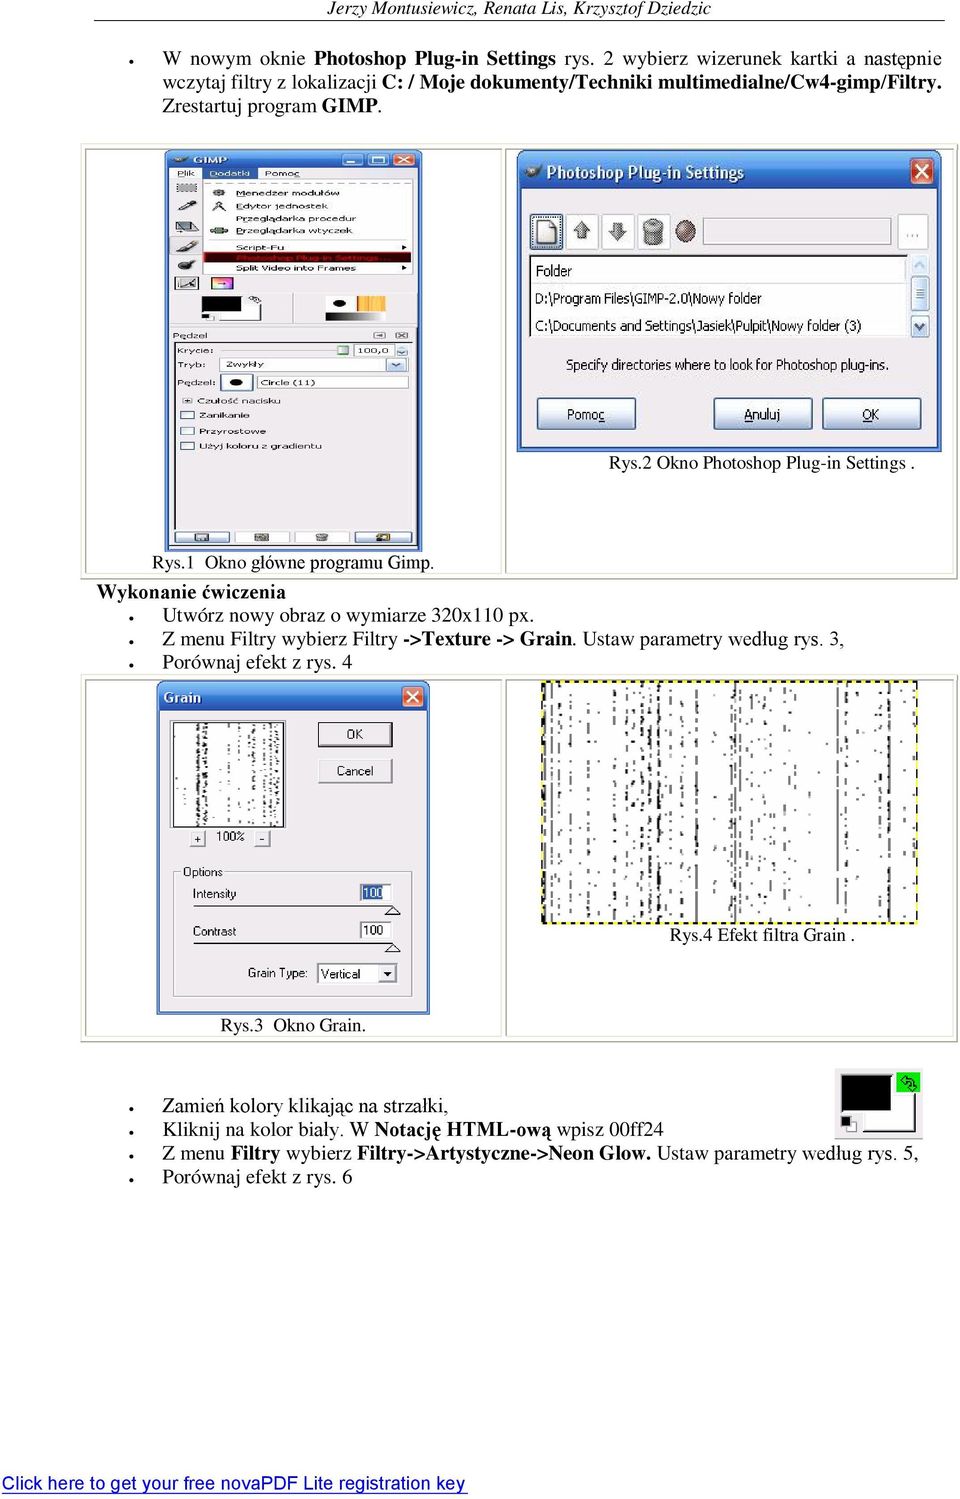 2 Okno Photoshop Plug-in Settings. Rys.1 Okno główne programu Gimp. Wykonanie ćwiczenia Utwórz nowy obraz o wymiarze 320x110 px.